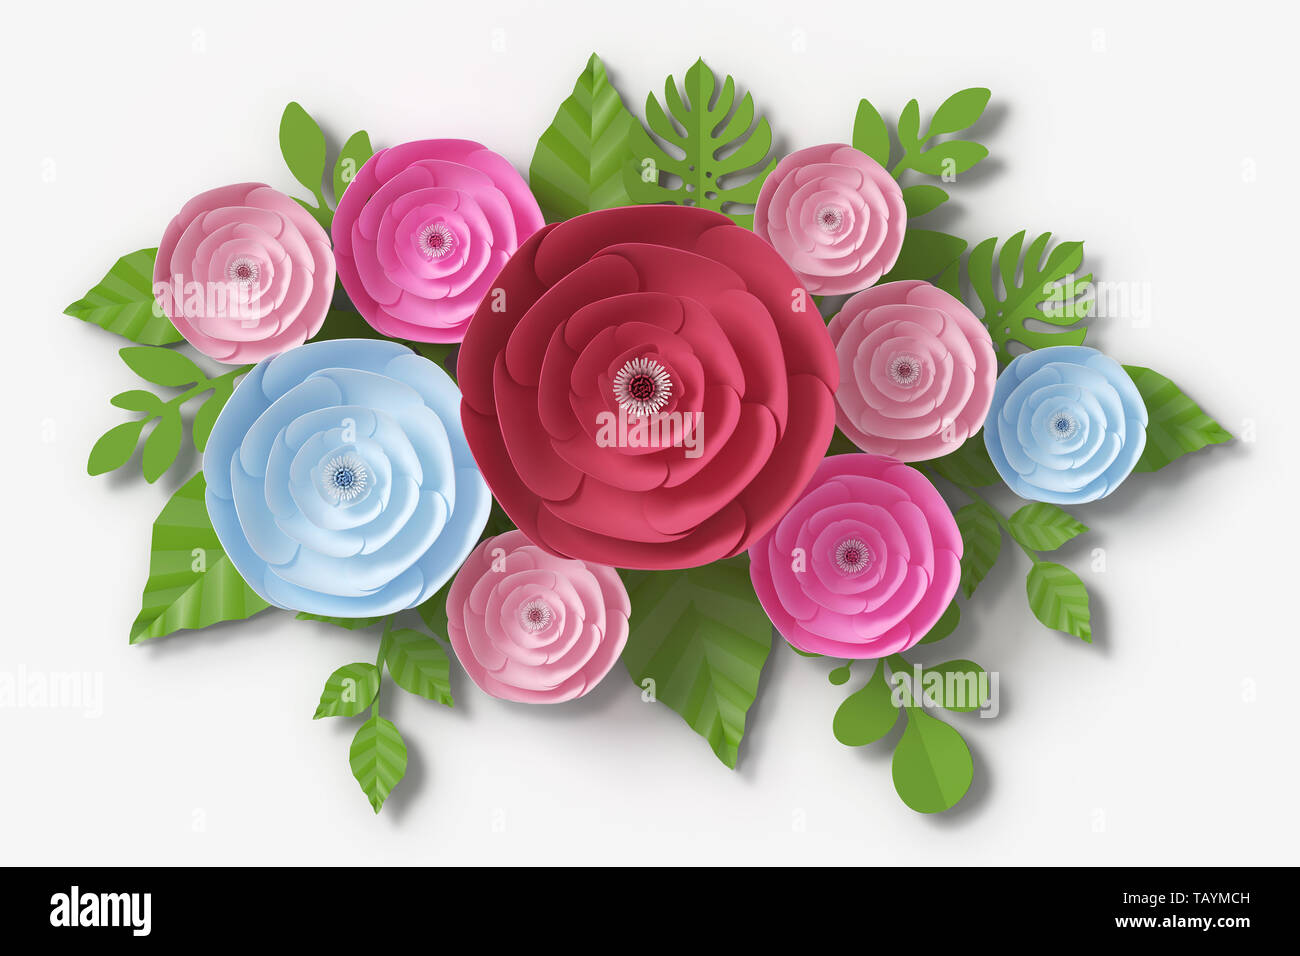 Fiore di Stile di carta e colorati di rosa, carta artigianale floreali, rendering 3D, con percorso di clipping. Foto Stock